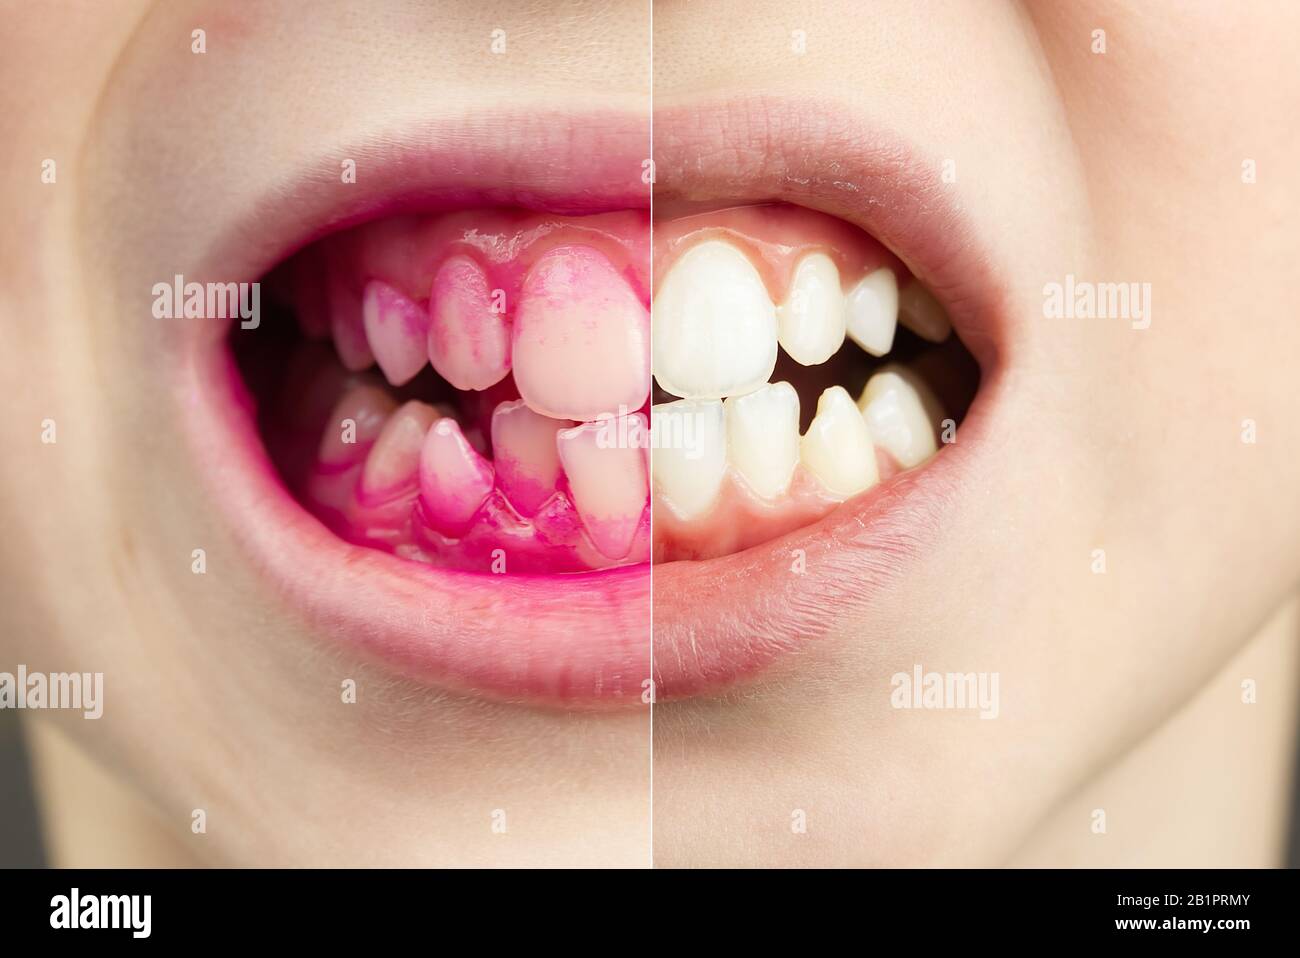 Plaque révélant les comprimés au travail. Avant et après - effet. Gros plan photo de la dent de jeune garçon. Concept de pilule dentaire Banque D'Images